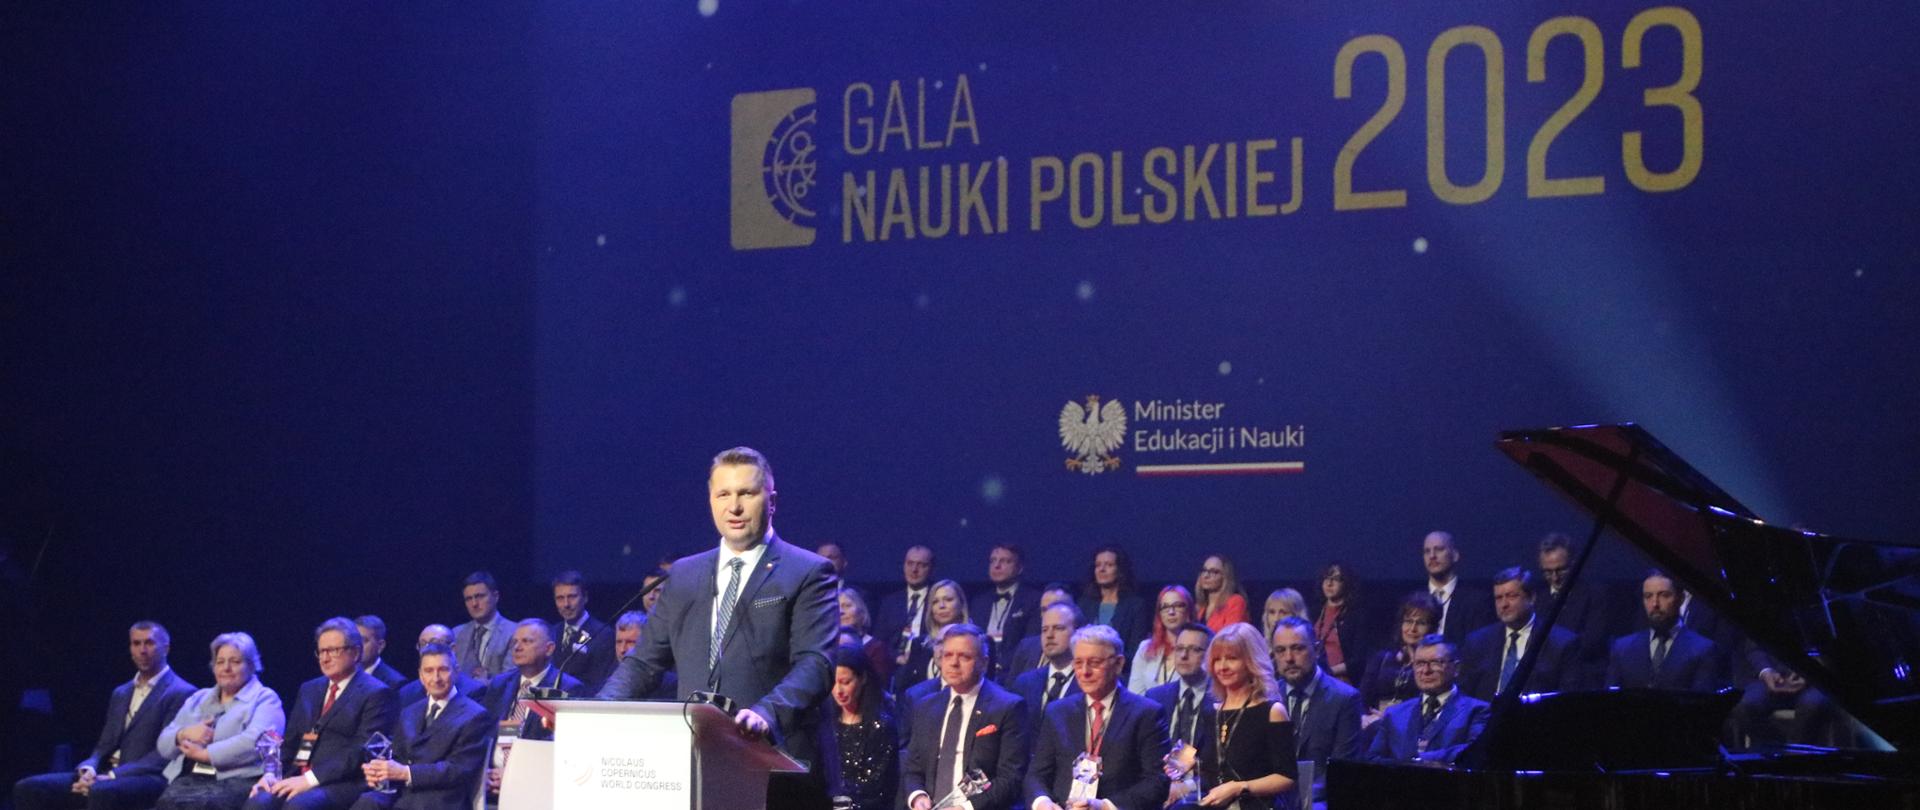 Gala Nauki Polskiej 